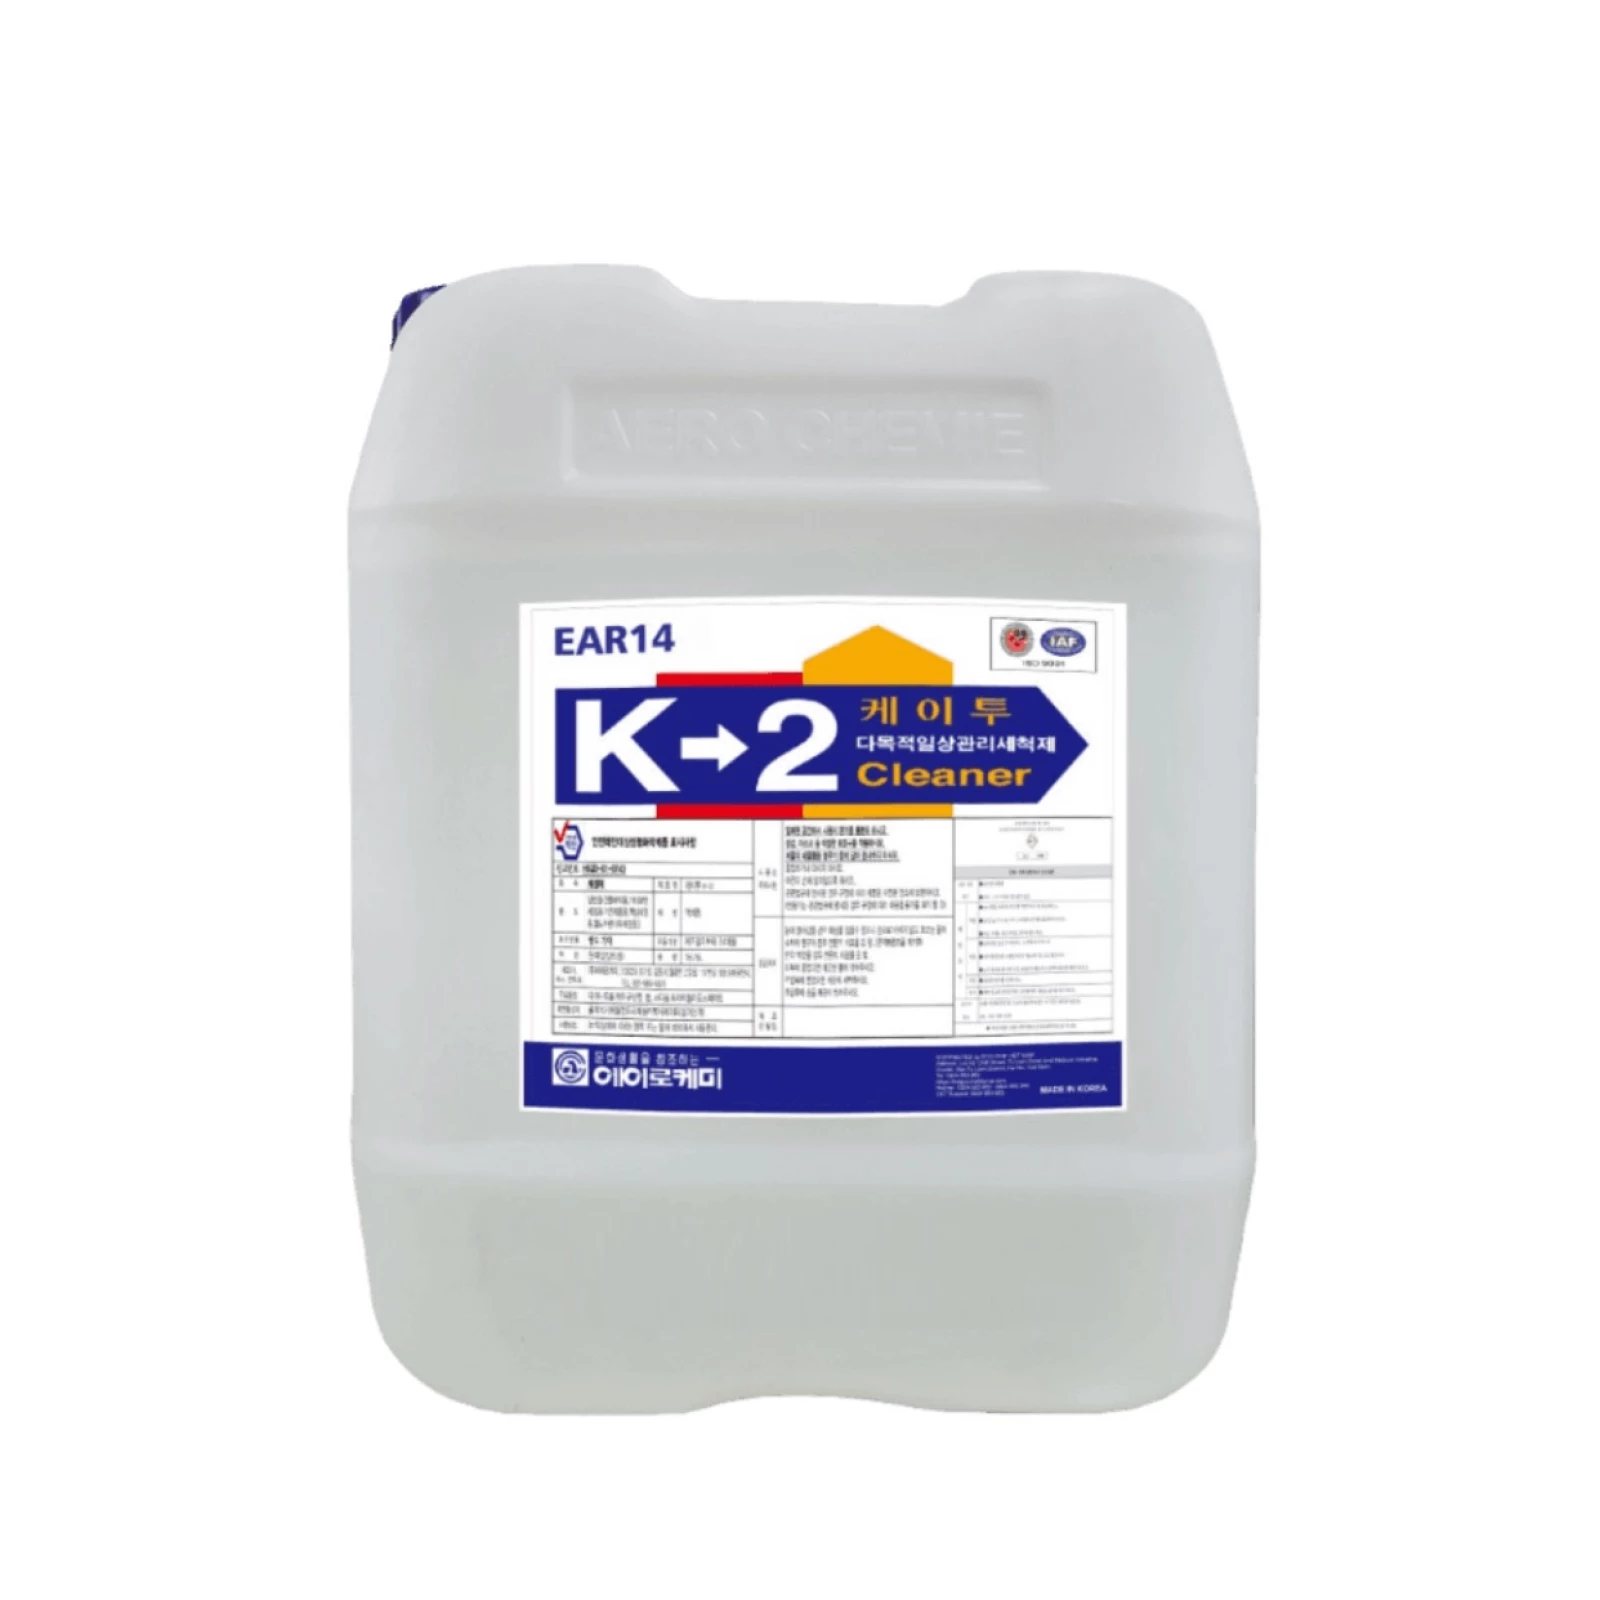 Nước lau sàn đa năng, hóa chất lau sàn công nghiệp EAR14 K-2